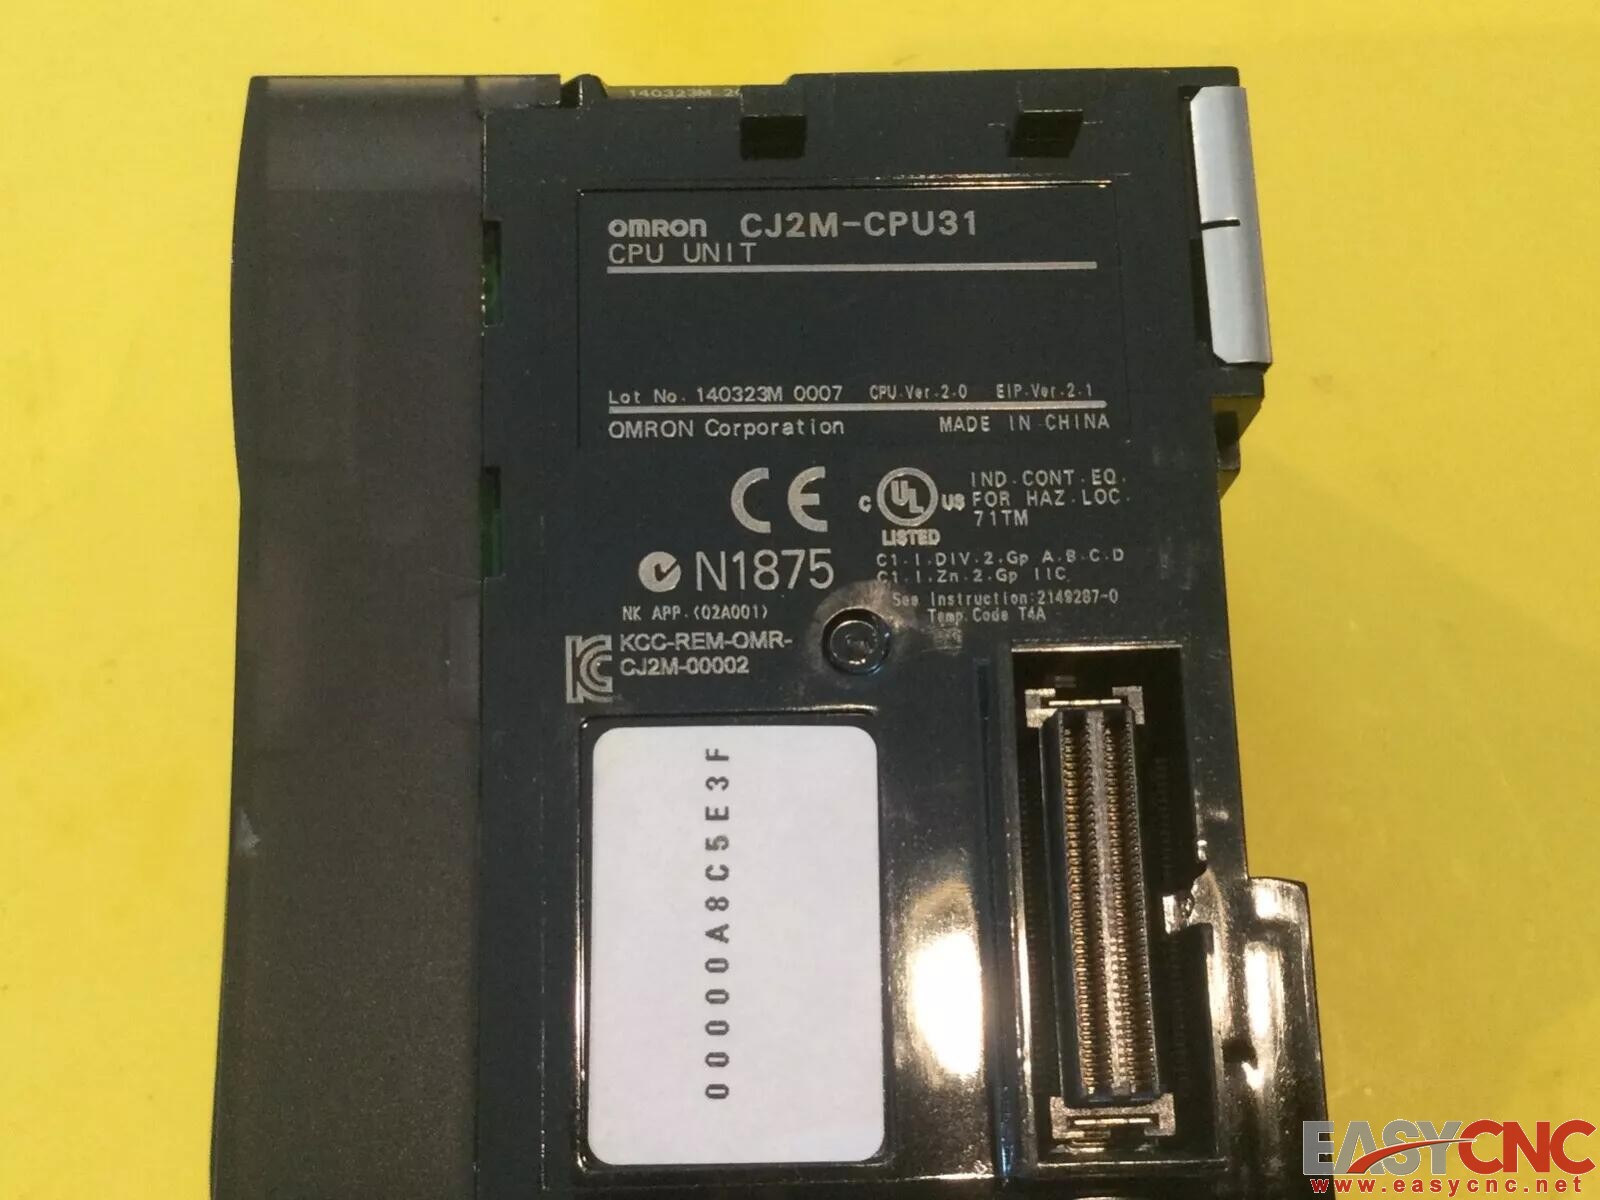 CJ2M-CPU31 OMRON CPU Unit Used